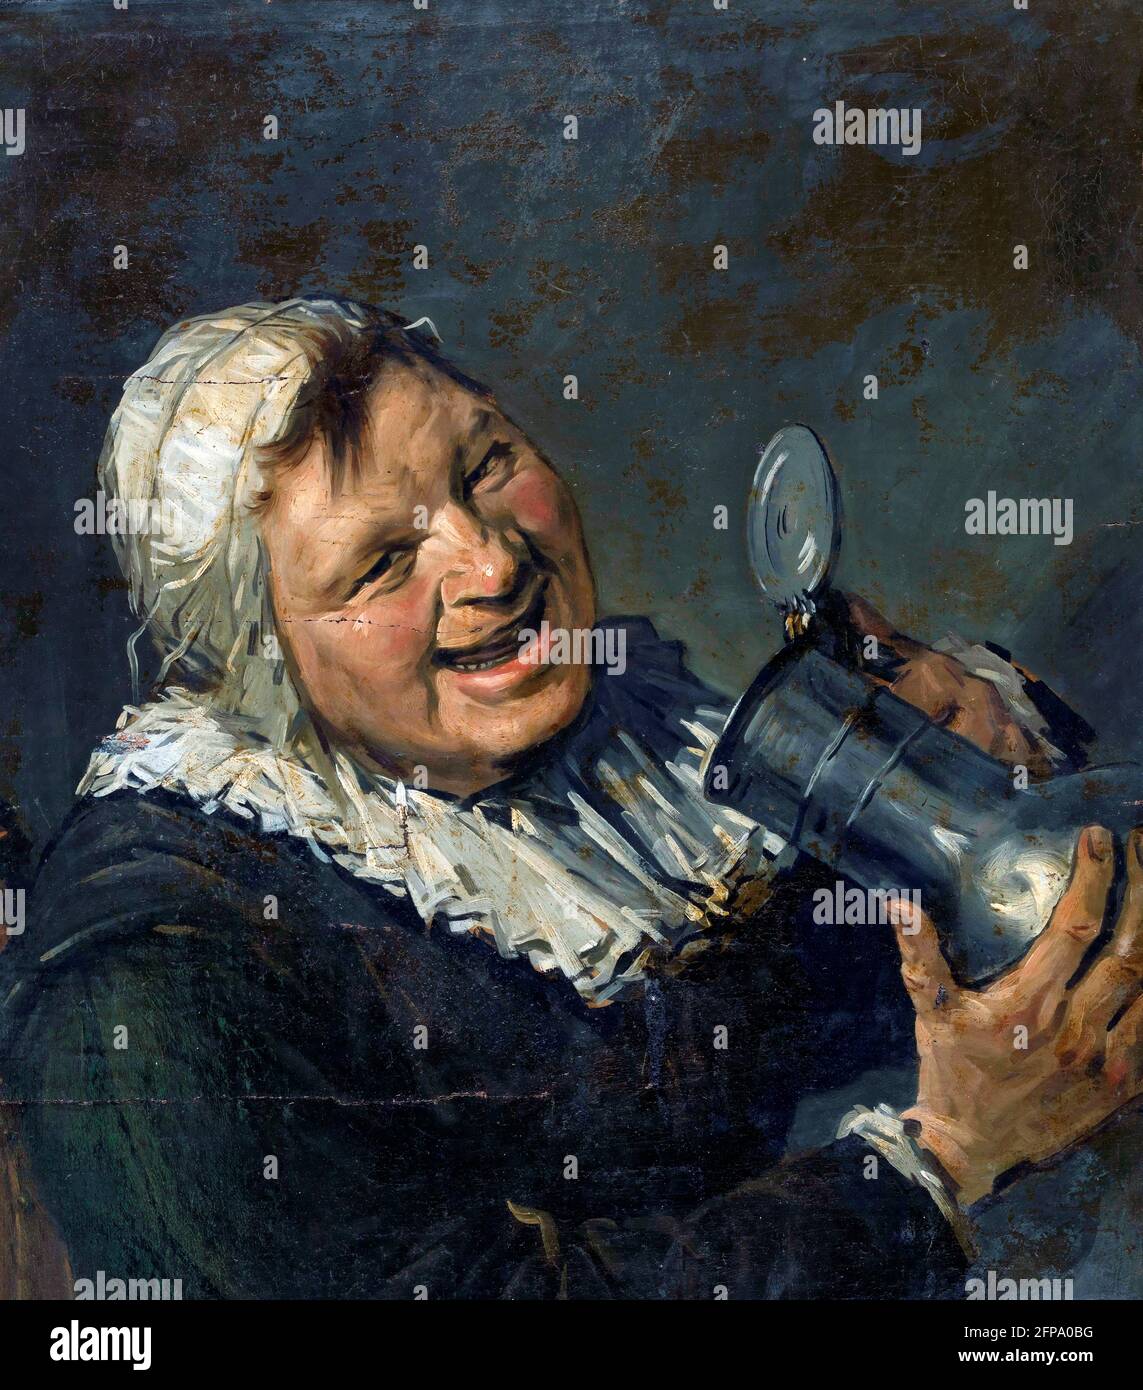 Han van Meegeren. Malle Babbe, ein Gemälde im Stil von Frans Hals vom berühmten niederländischen Kunstfälscher Henricus Antonius 'Han' van Meegeren (1889-1947), Öl auf Leinwand, 1930-1940 Stockfoto